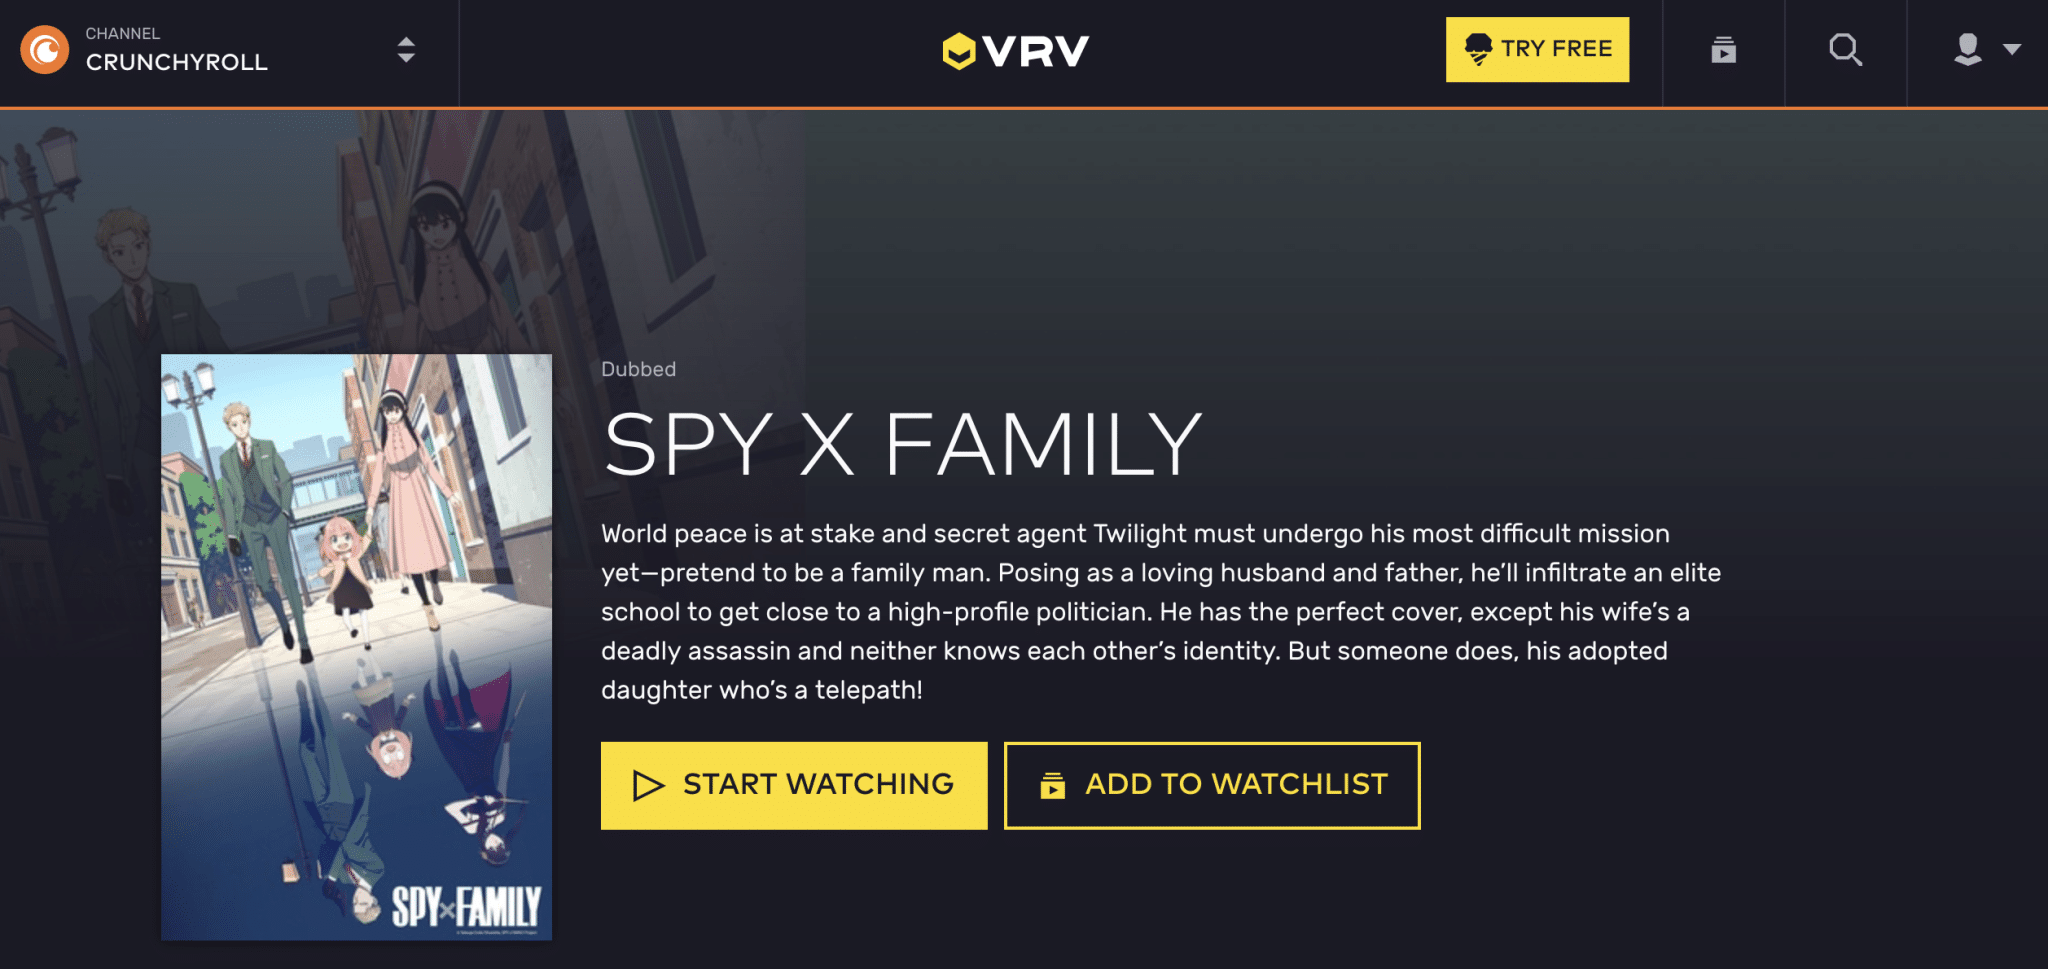 Spy x Family at VRV, Tatsuya Endo/Shueisha, SPY x FAMILY Project